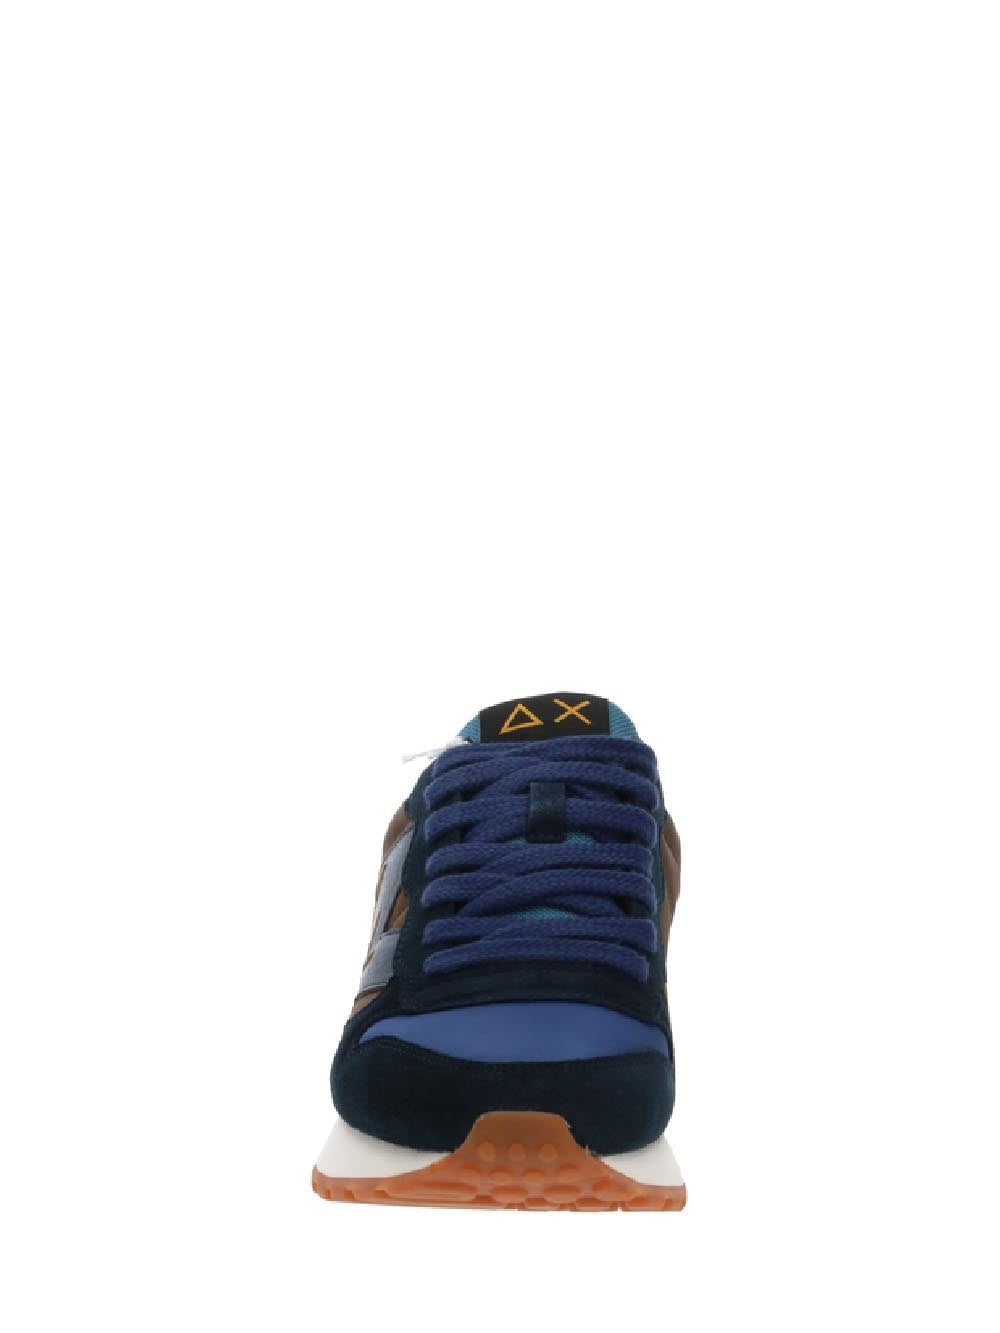 SUN68 Sneakers Uomo Marrone/blu